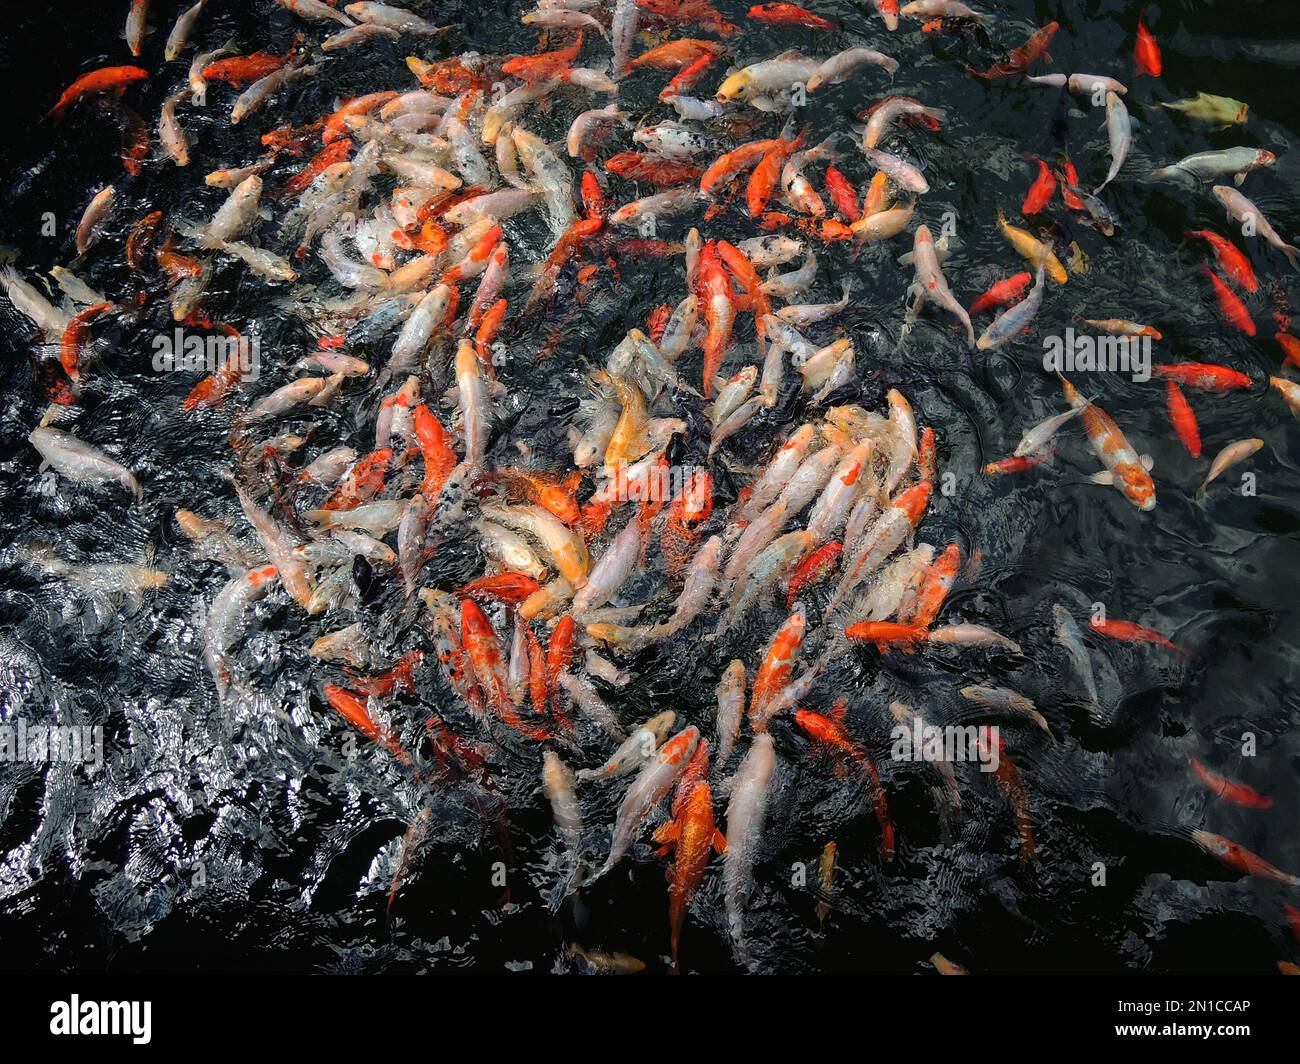 Enorme gruppo di carpe reali giapponesi che si nutrono in acque profonde Foto Stock